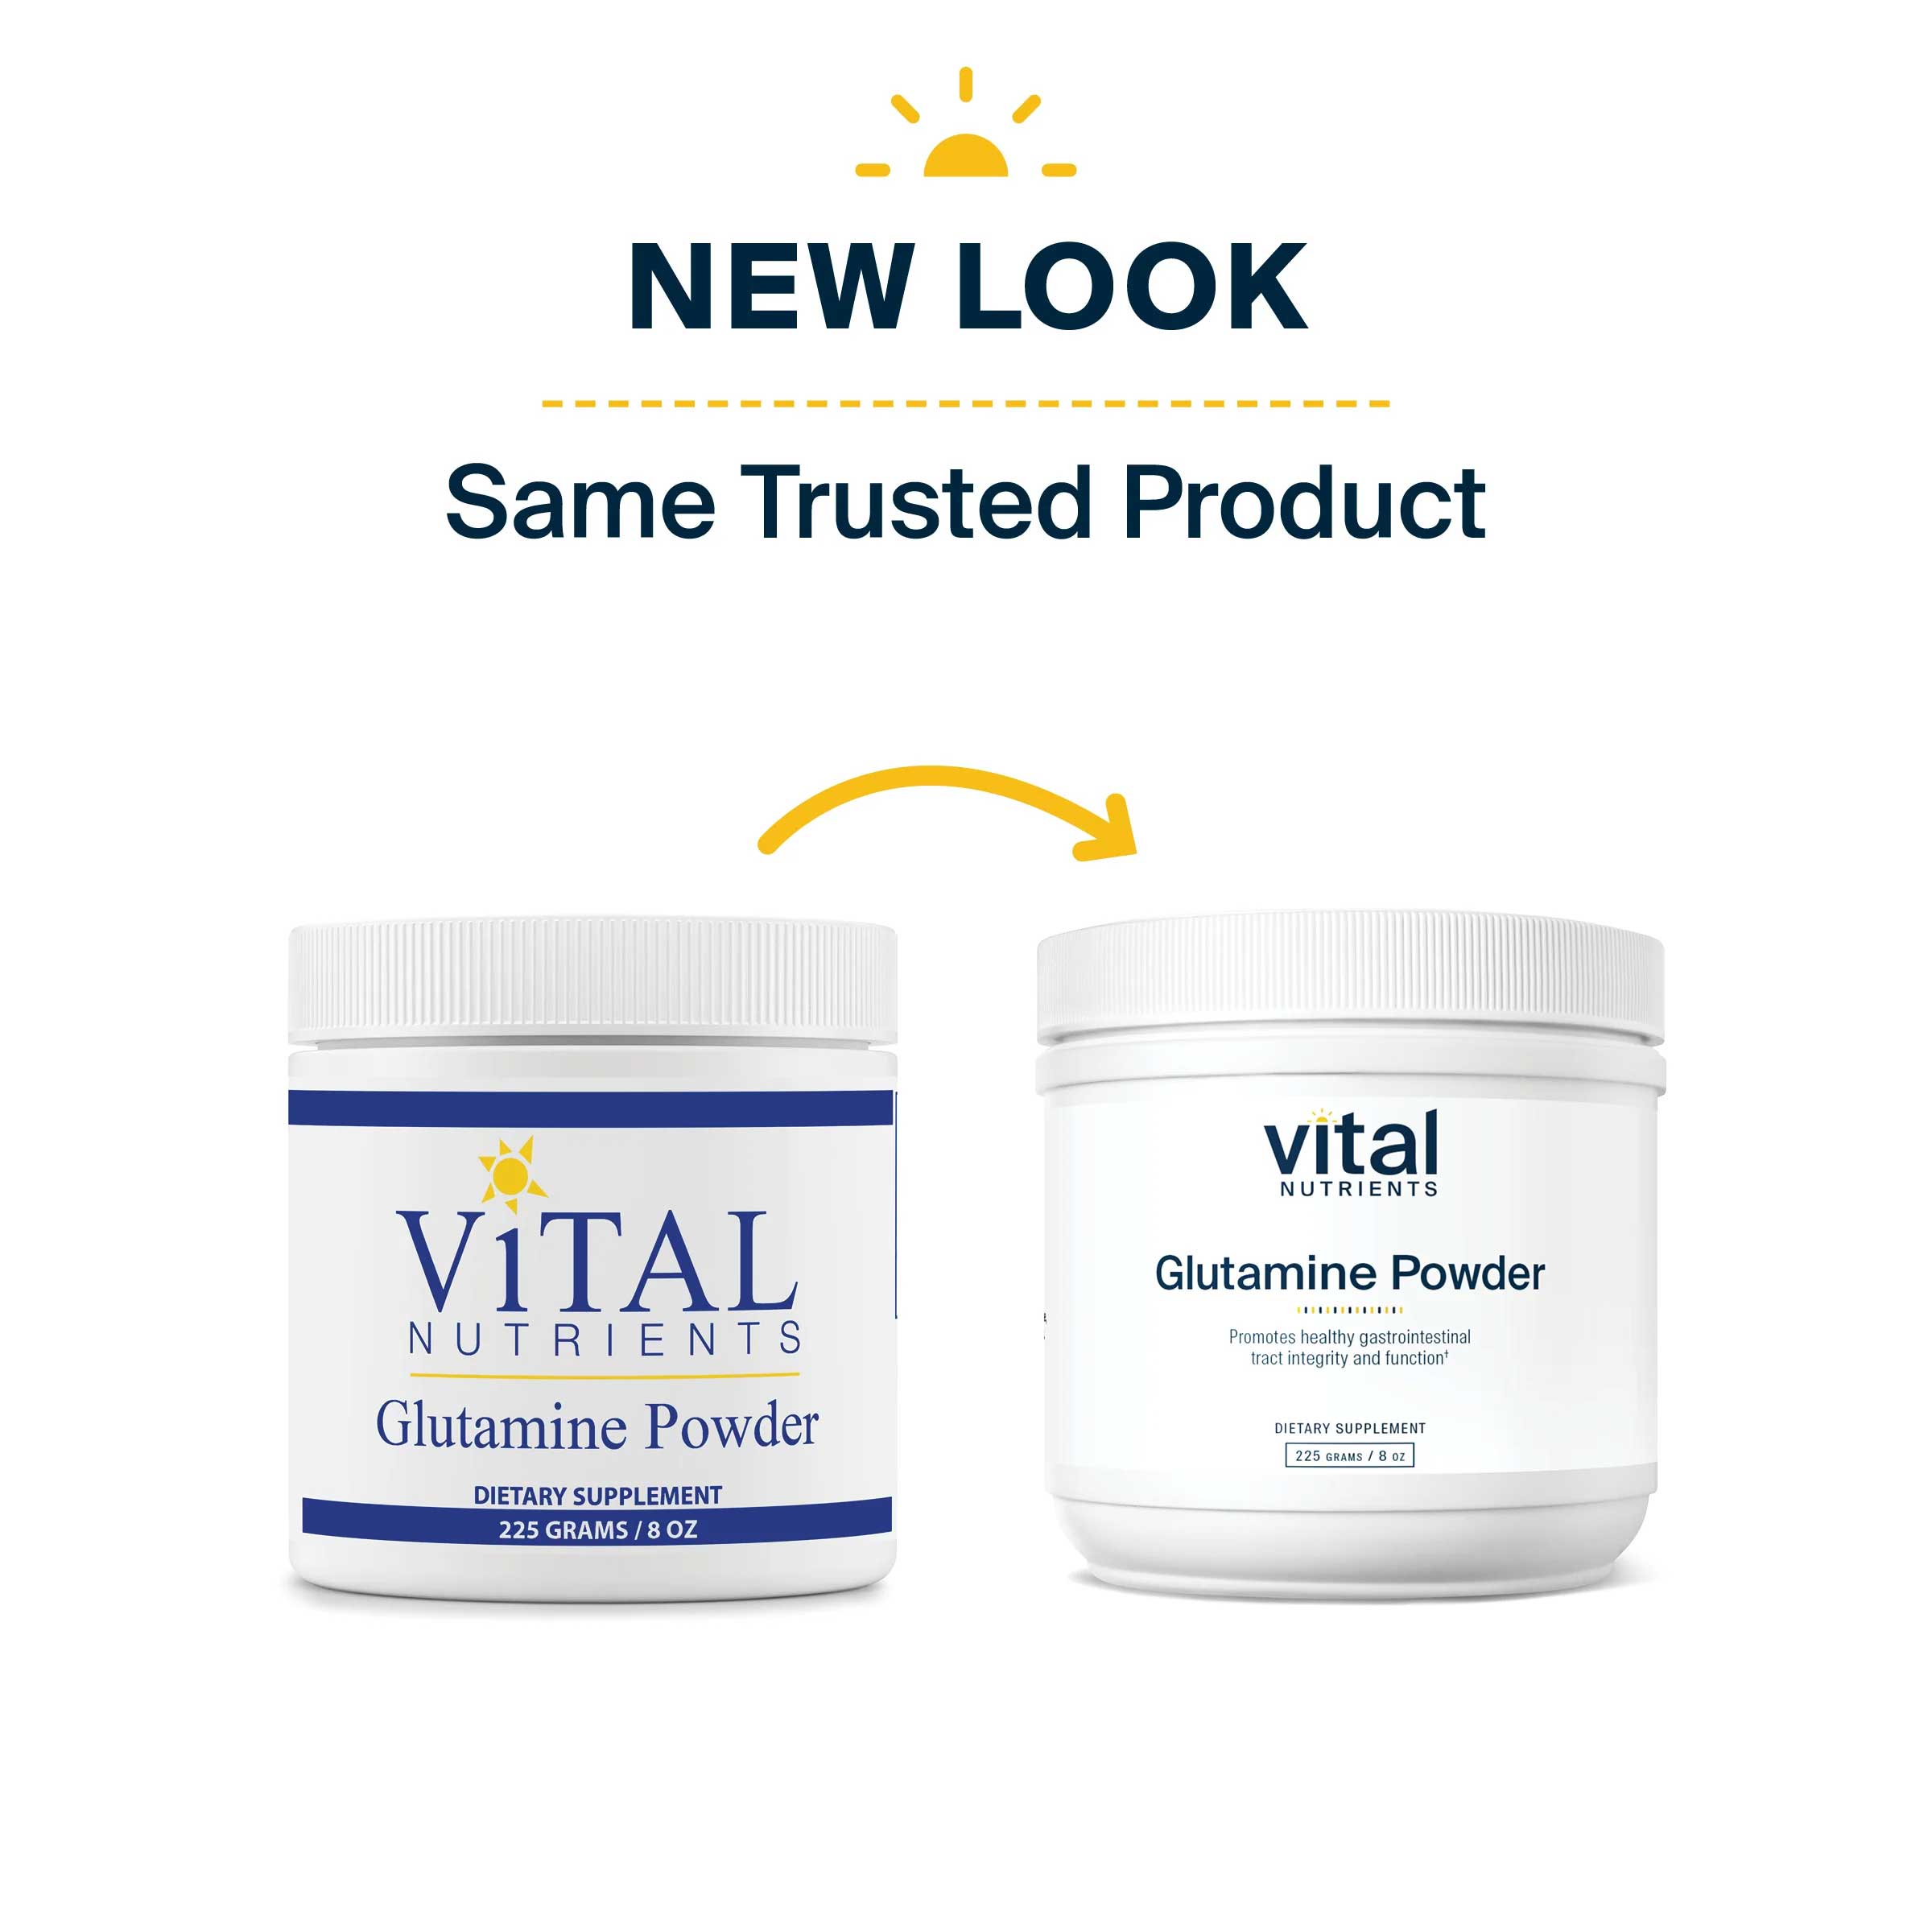 Vital Nutrients Glutamine Powder New Look